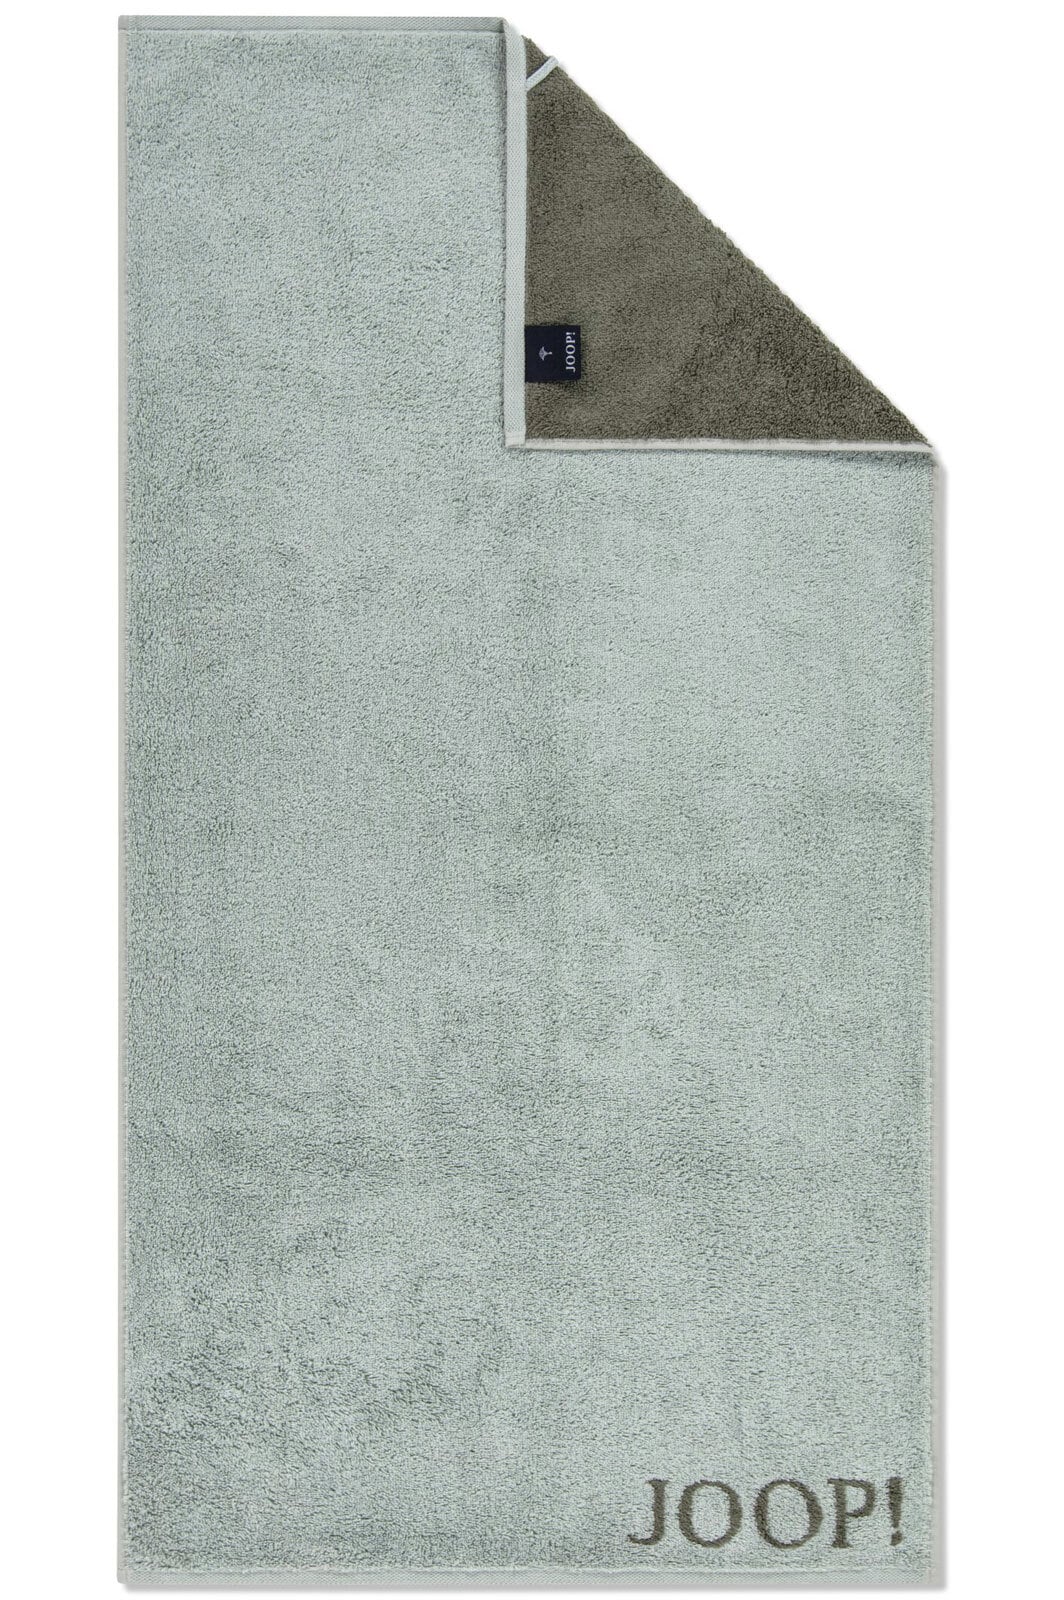 JOOP! Handtuch DOUBLEFACE 50 x 100 cm salbei/grün